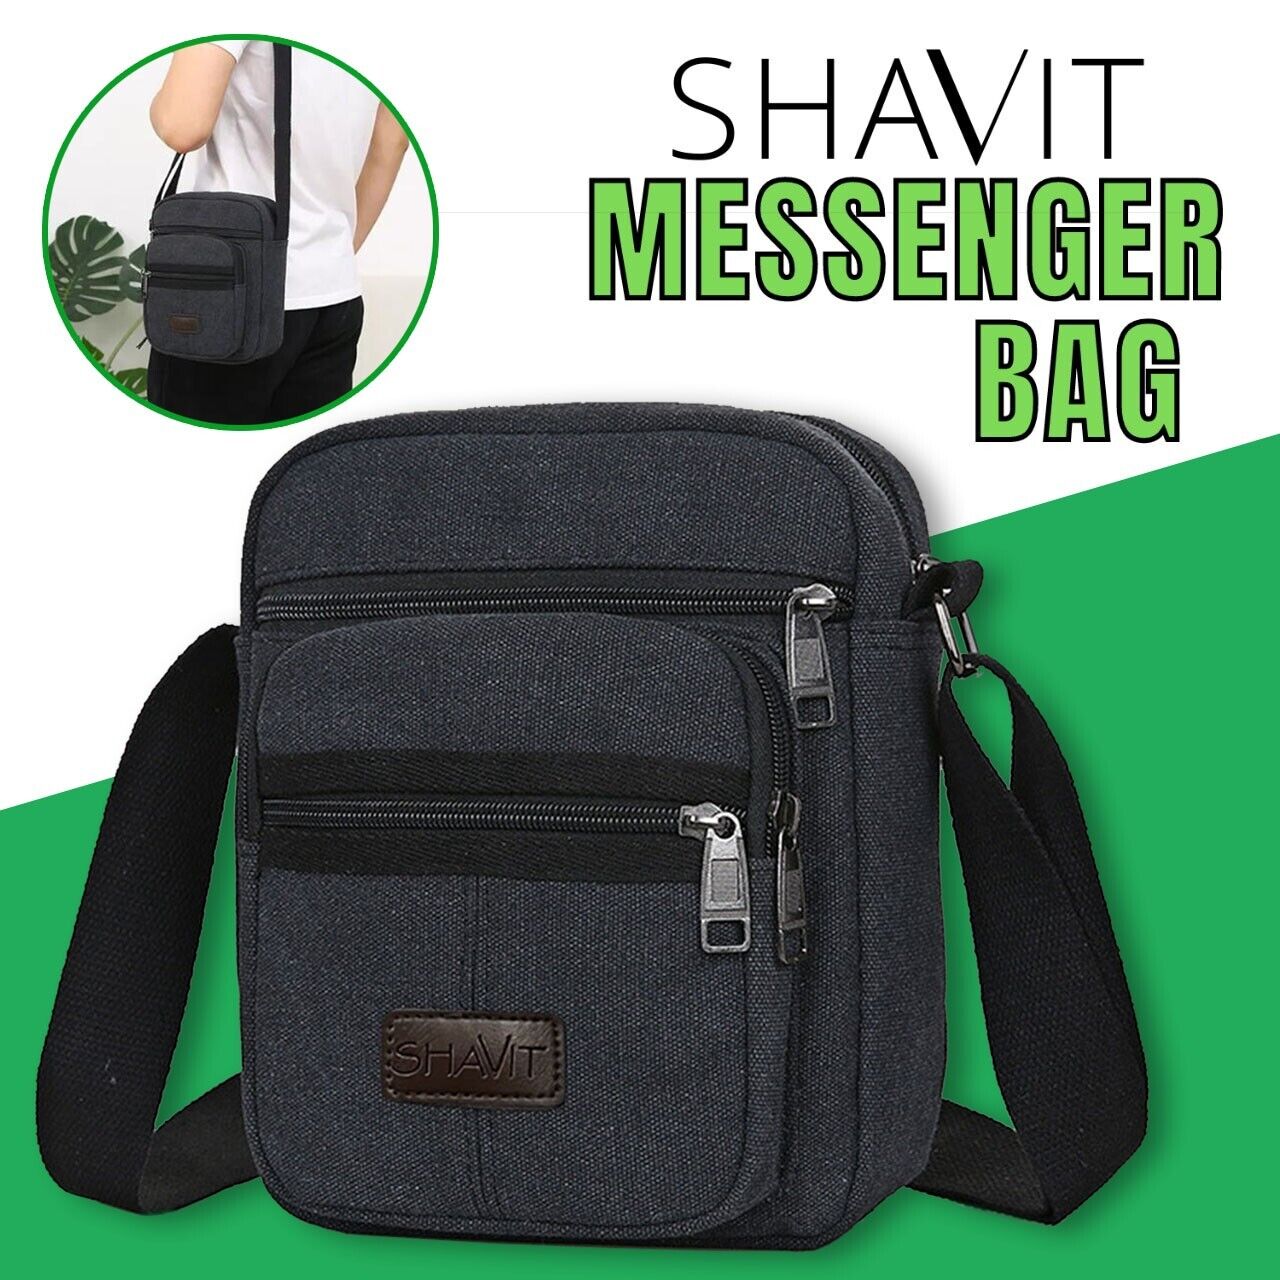 Messenger Bag Shoulder Bag Crossbody Canvas Bags Casual Satchel Vintage Bag - AFFORDABLE MARKET